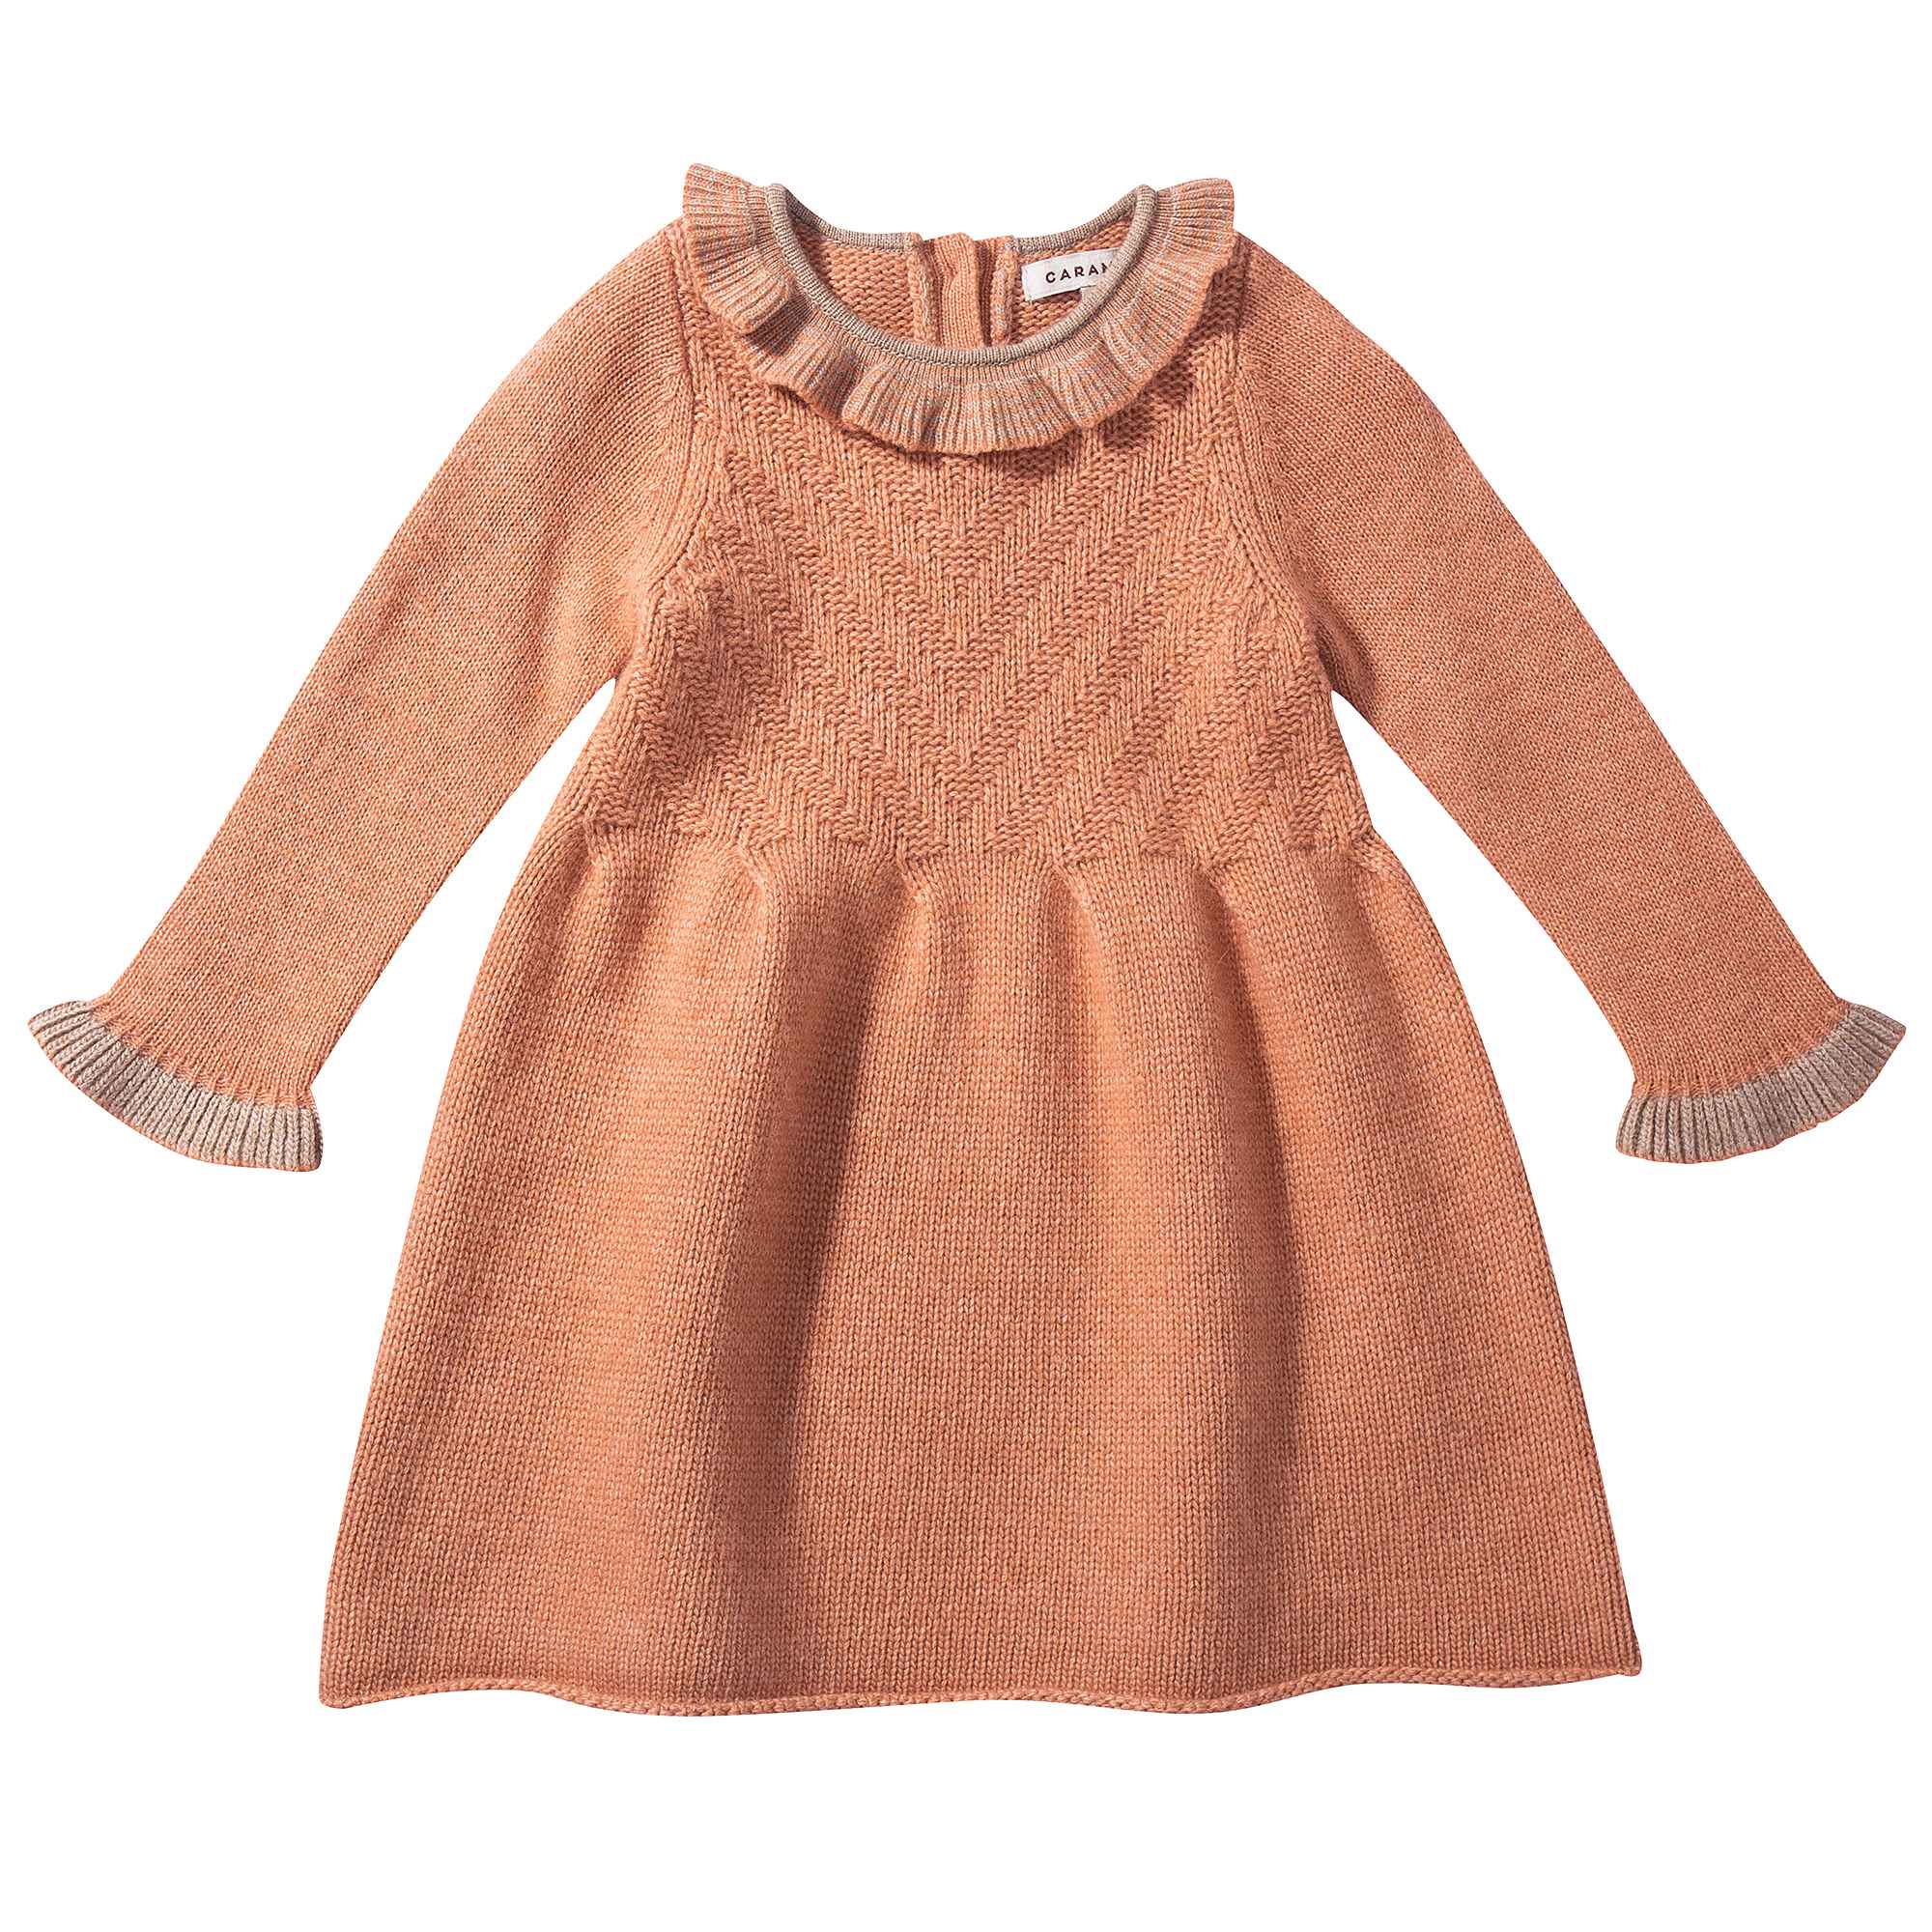 Baby Girls Light Orange Knitted Dress